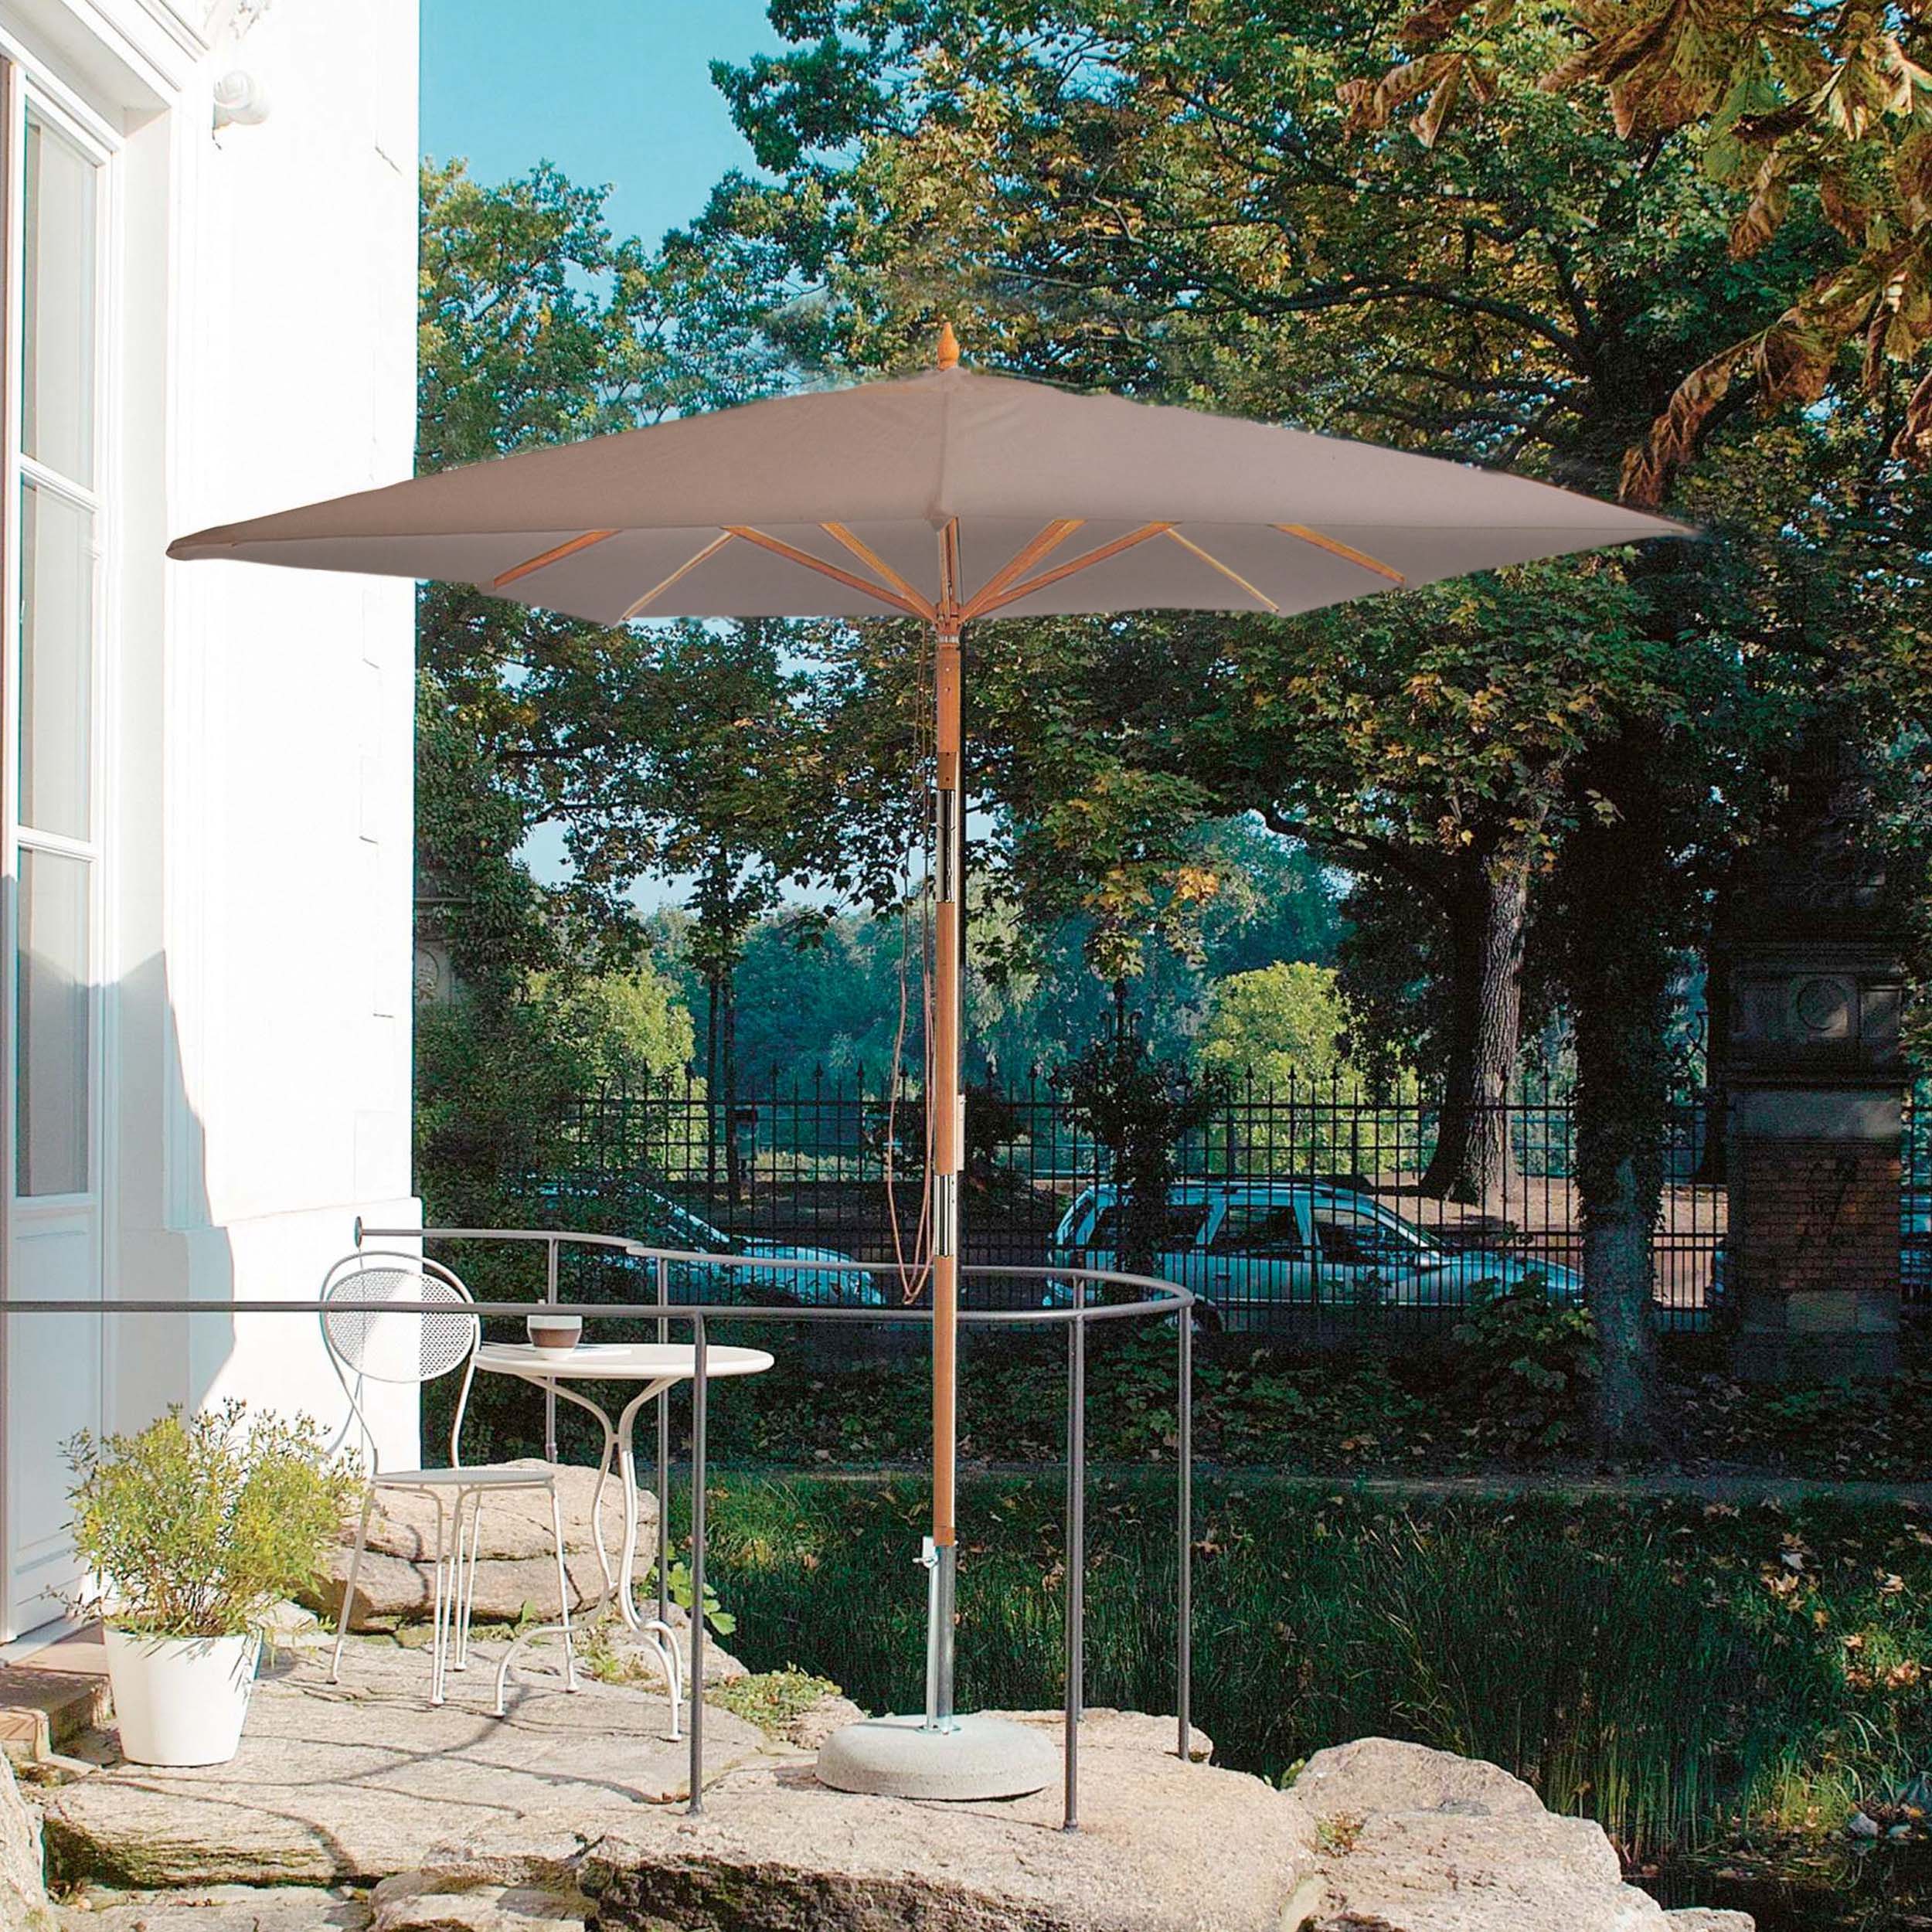 Parasol carré de campagne avec articulation sans porte-parasol